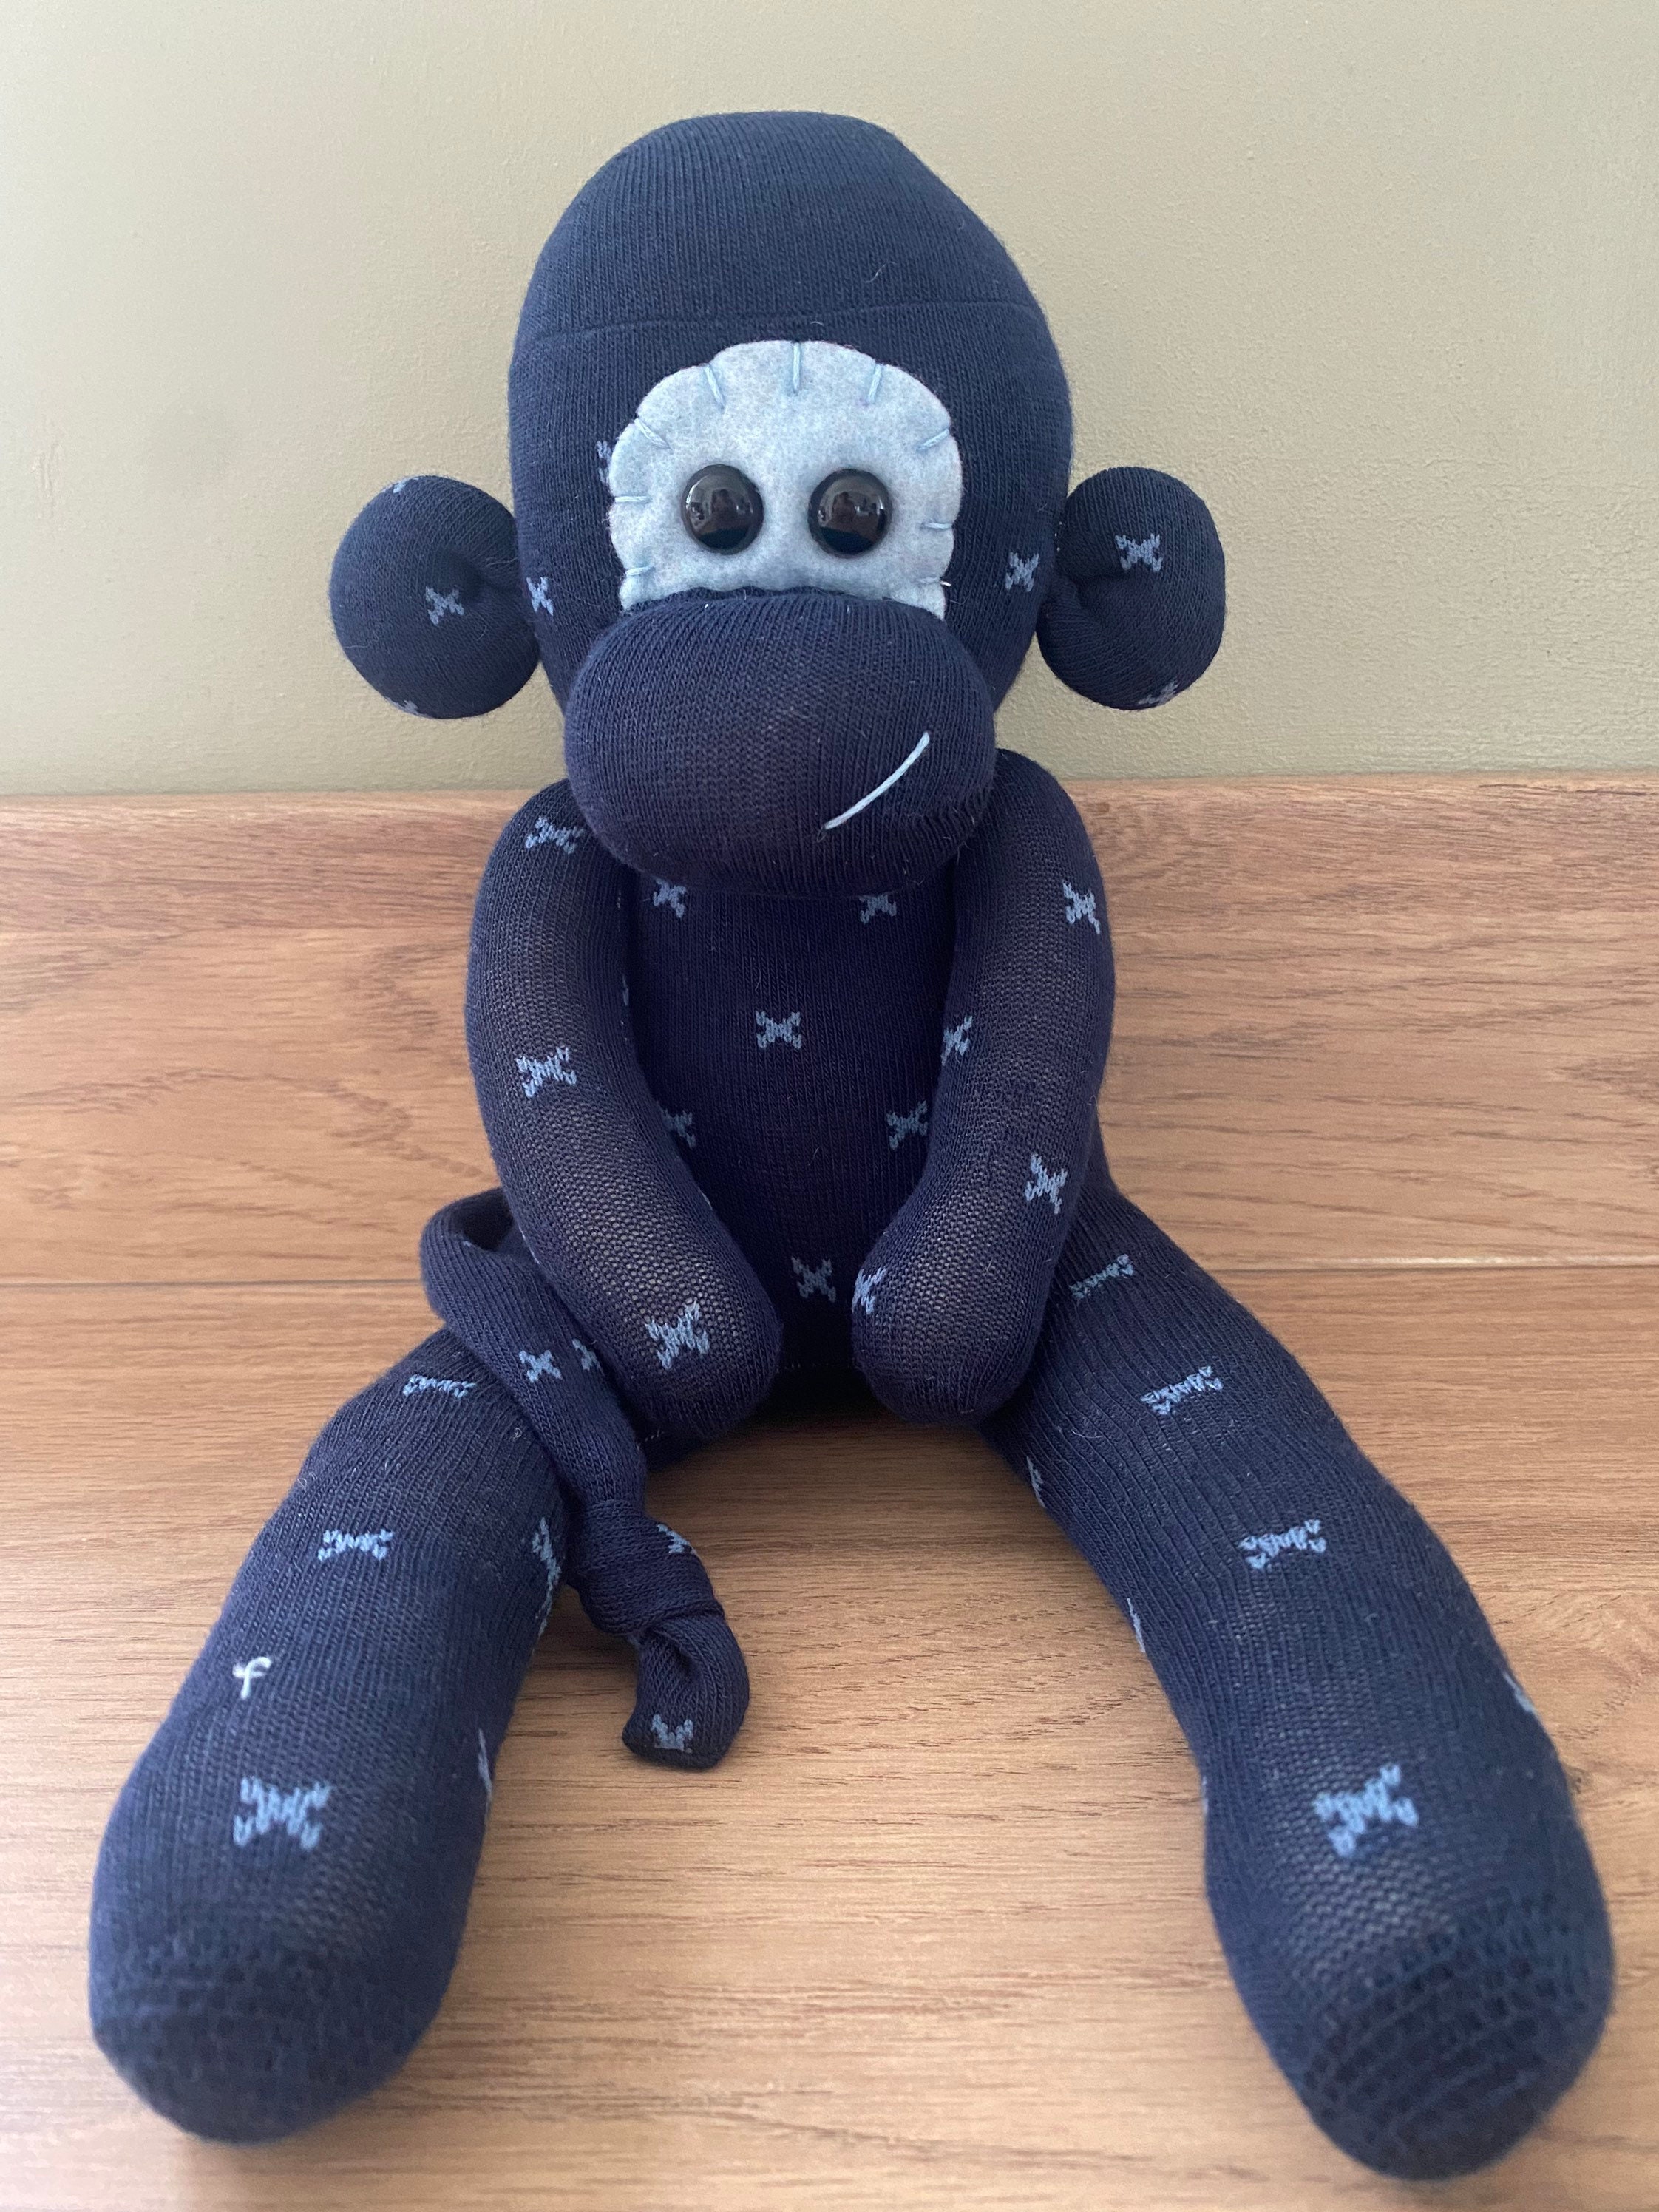 Handmade Sock monkey plush teddy animal gift for children kids | Etsy